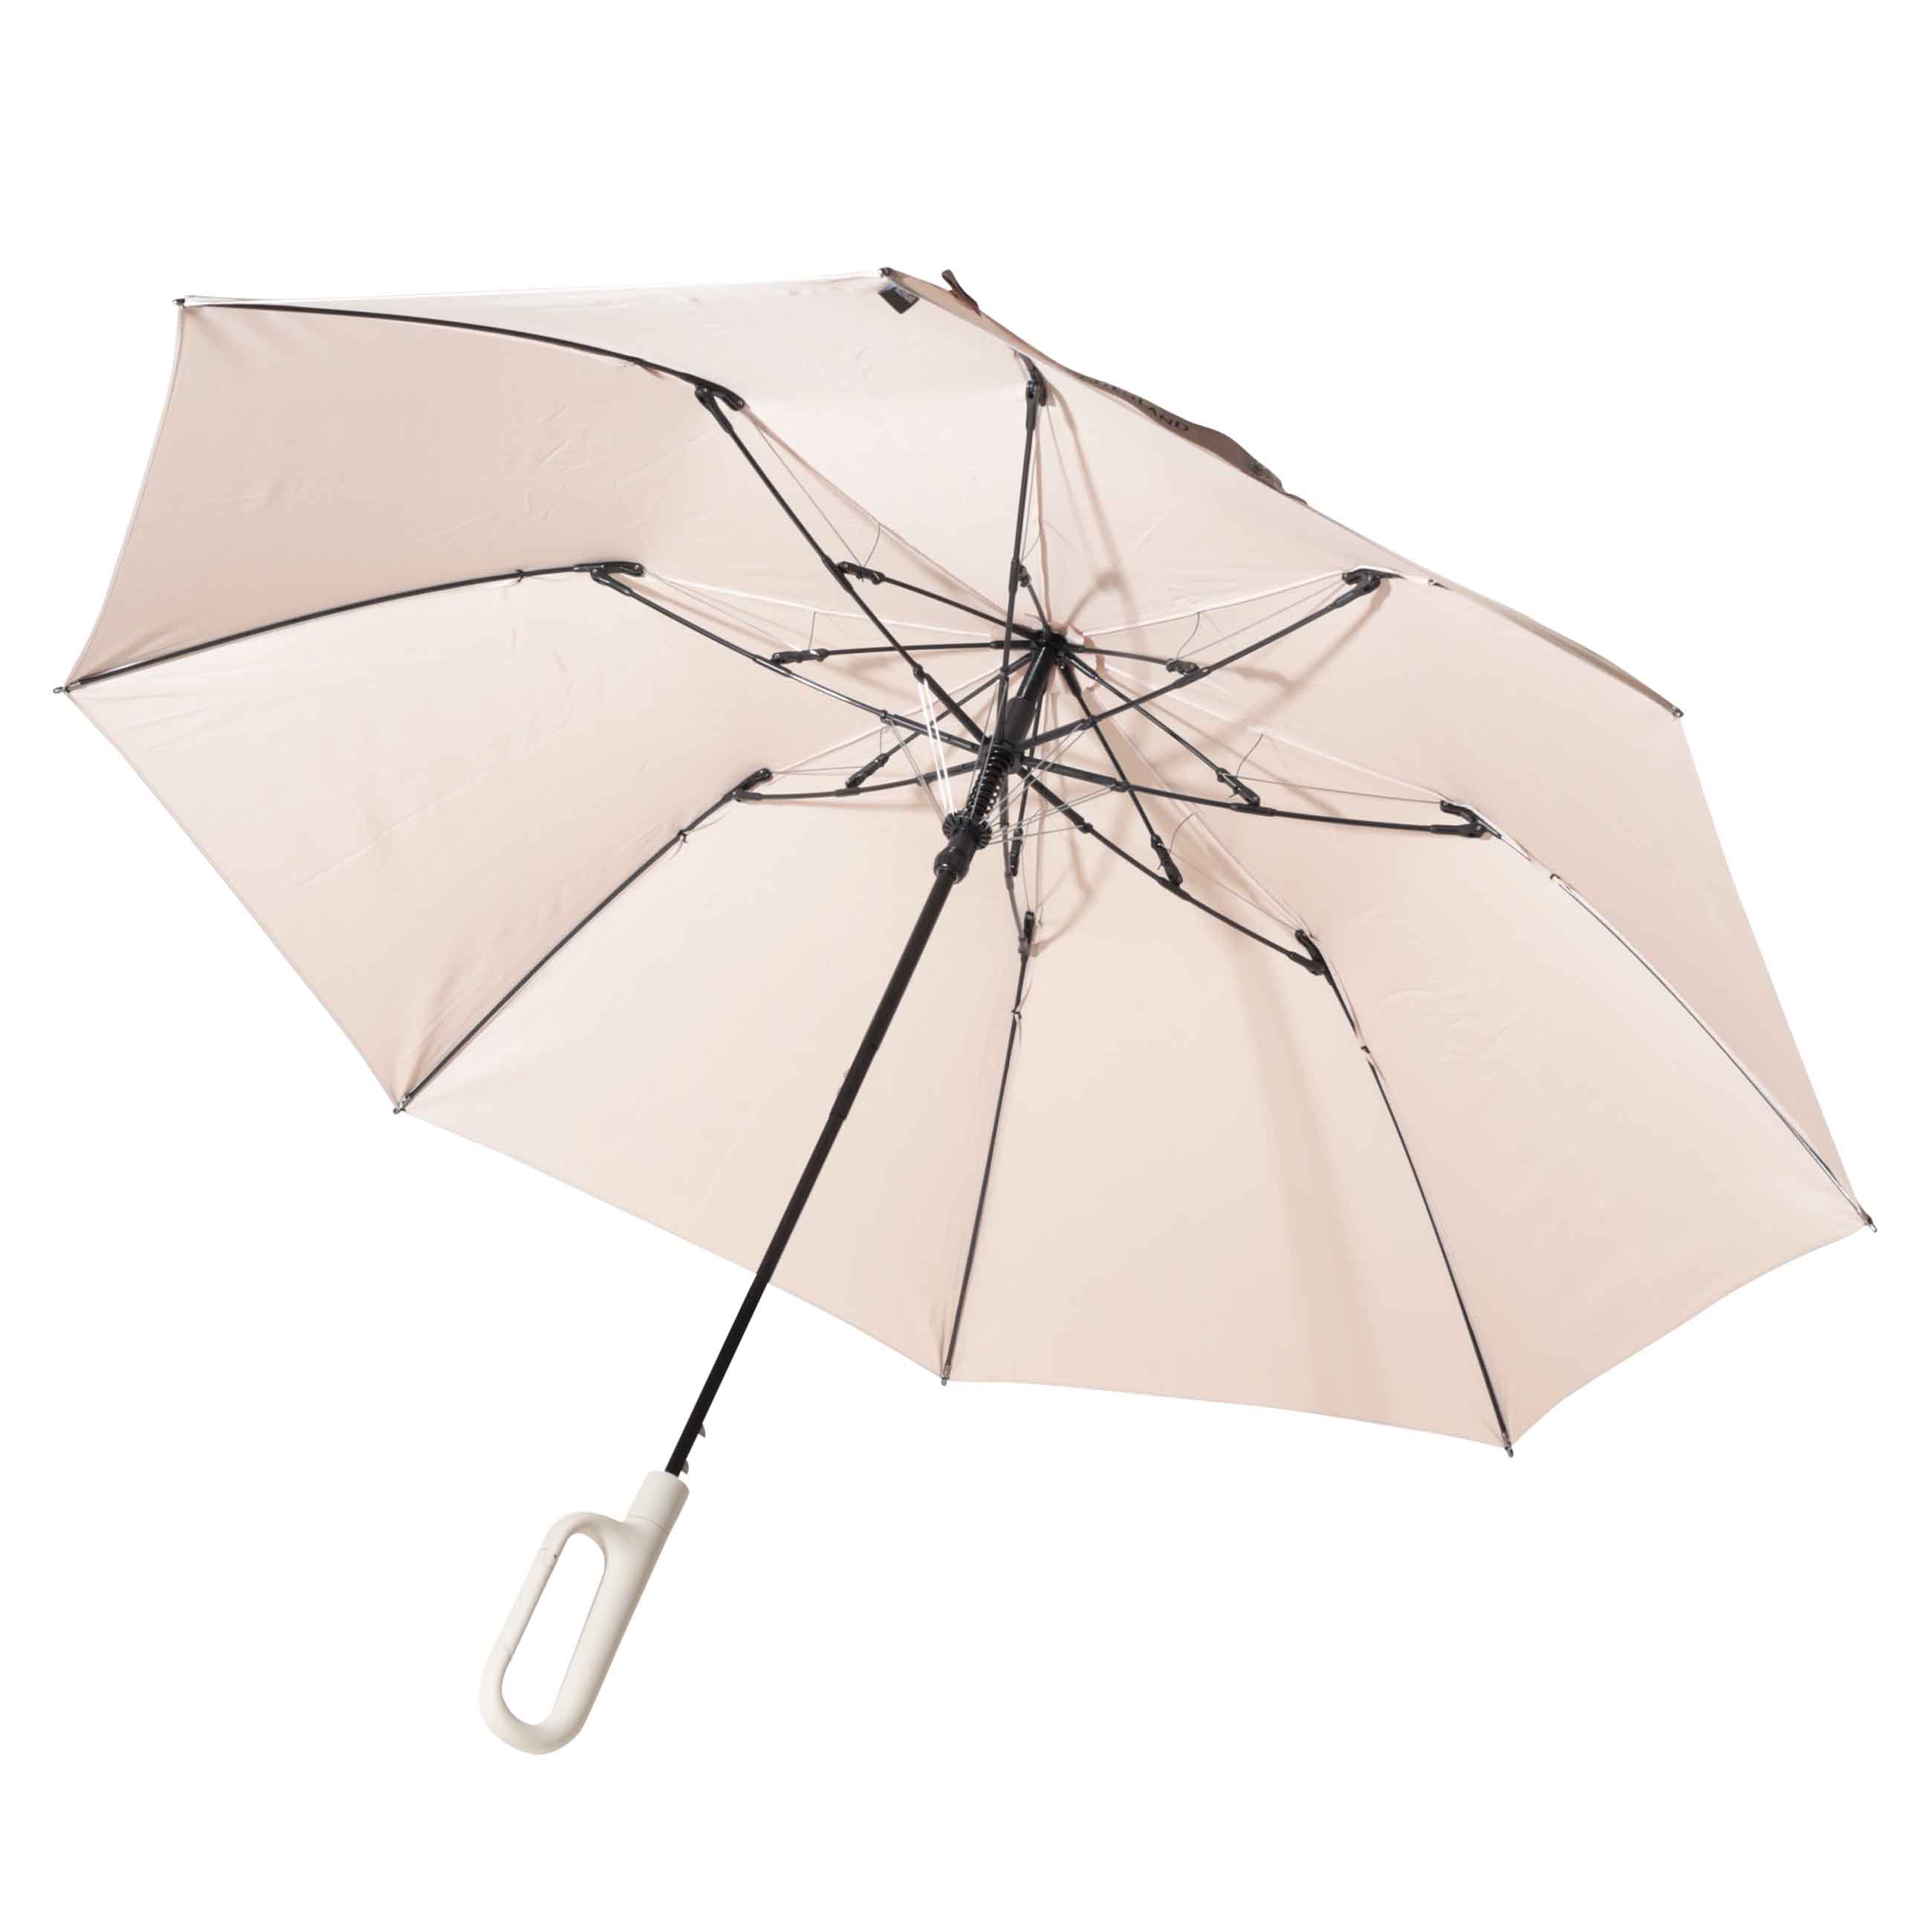 Зонт, 70 см, складной, полу-автоматический, с ручкой-карабином, эпонж, бежевый, Rainfall изображение № 2